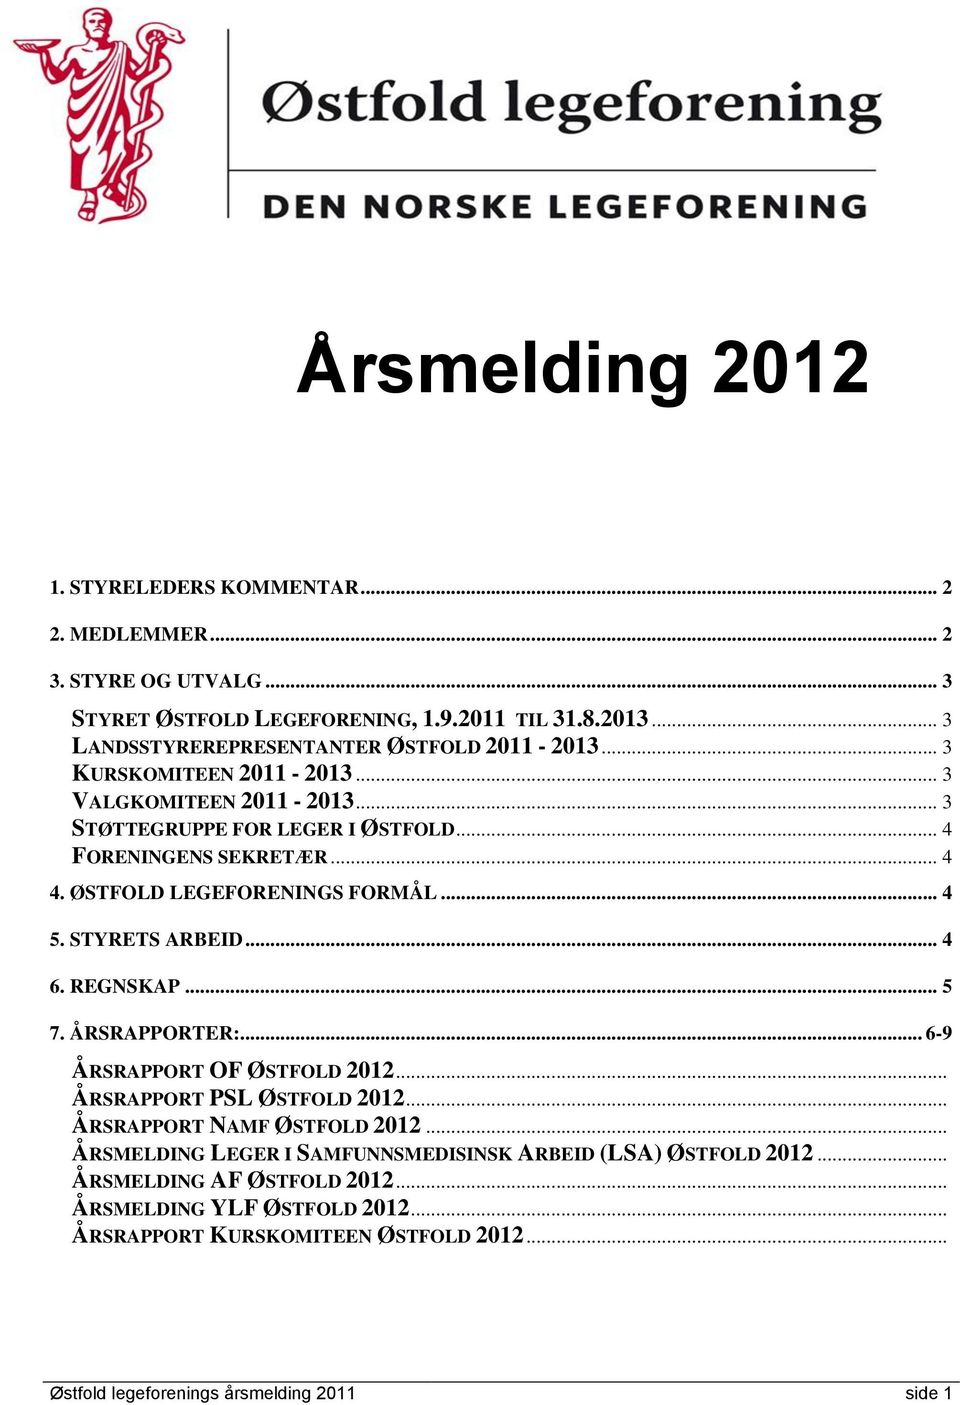 ØSTFOLD LEGEFORENINGS FORMÅL... 4 5. STYRETS ARBEID... 4 6. REGNSKAP... 5 7. ÅRSRAPPORTER:... 6-9 ÅRSRAPPORT OF ØSTFOLD 2012... ÅRSRAPPORT PSL ØSTFOLD 2012.